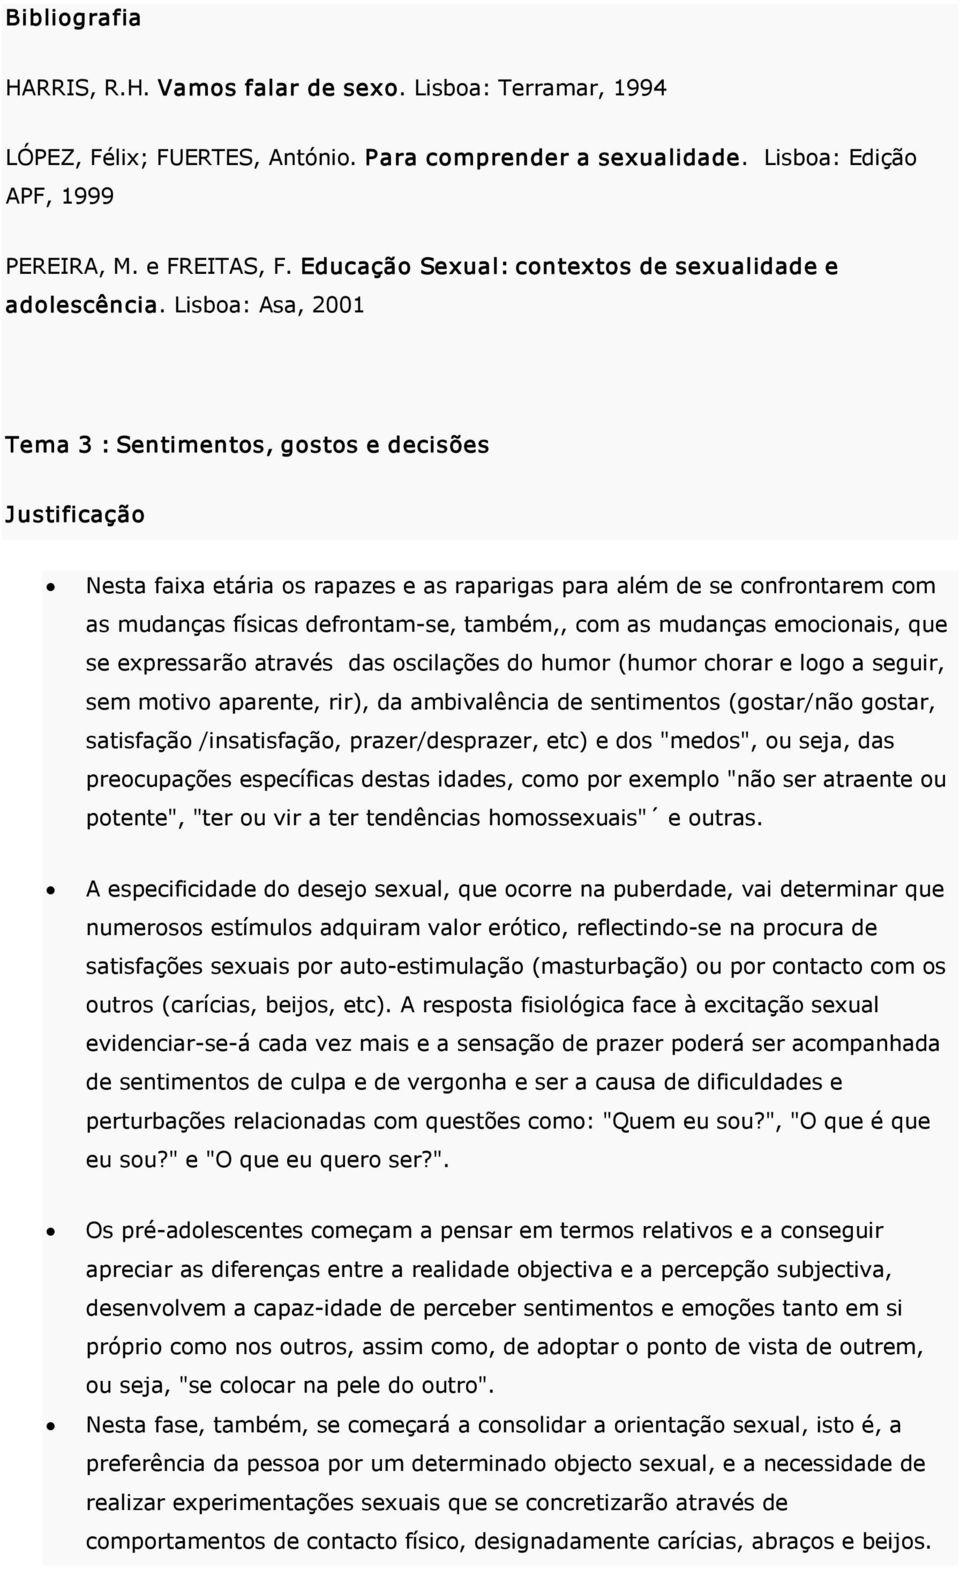 Lisboa: Asa, 2001 Tema 3 : Sentimentos, gostos e decisões Nesta faixa etária os rapazes e as raparigas para além de se confrontarem com as mudanças físicas defrontam se, também,, com as mudanças